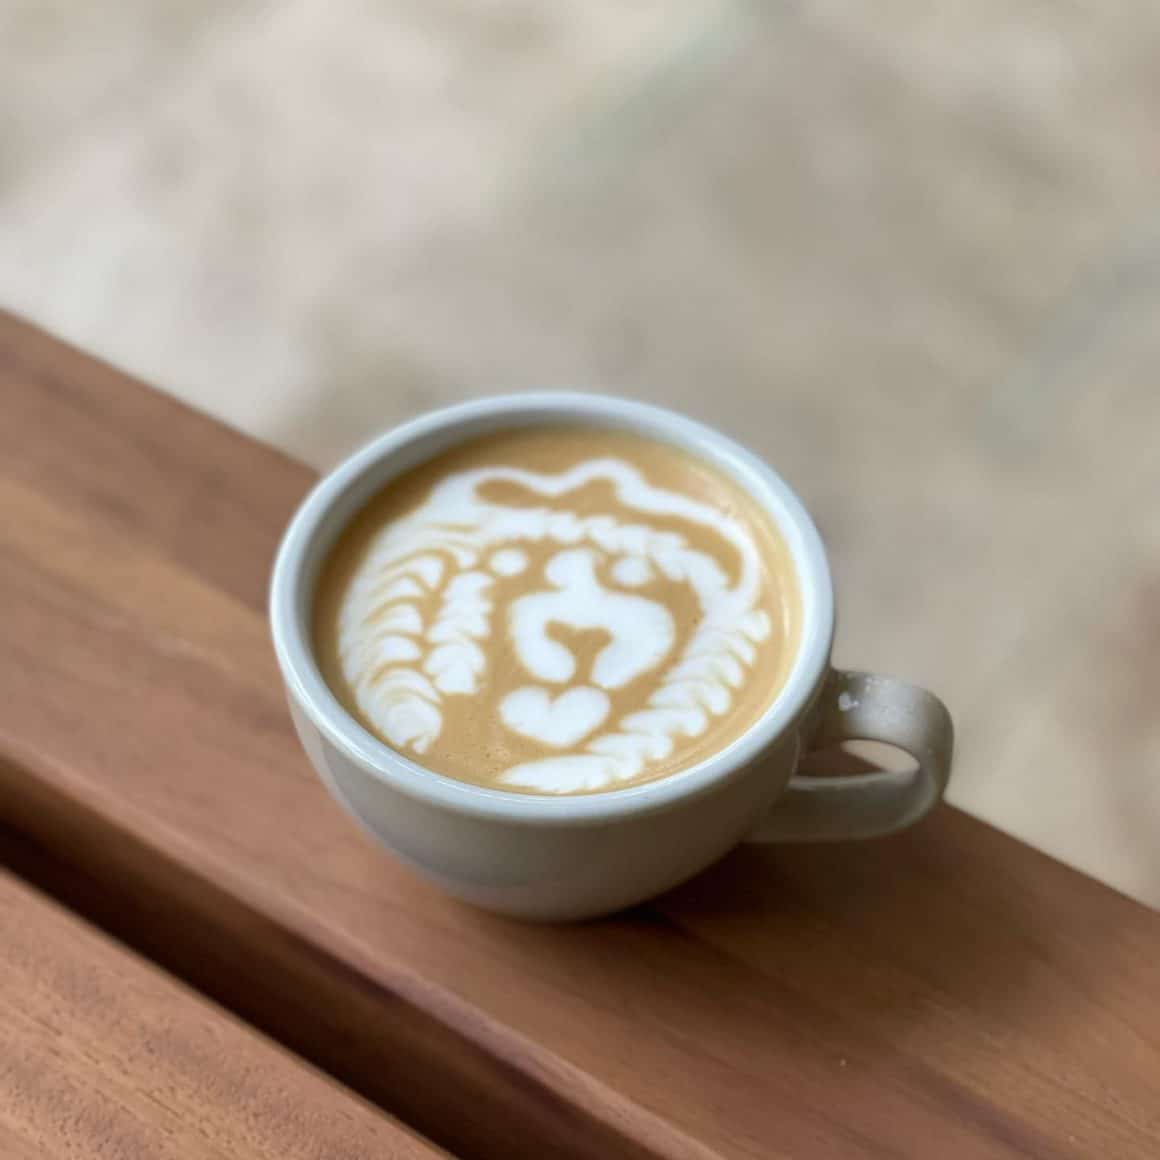 ceasca de cafea cu art latte - caine facuta din lapte. La Bob Speciality Coffee